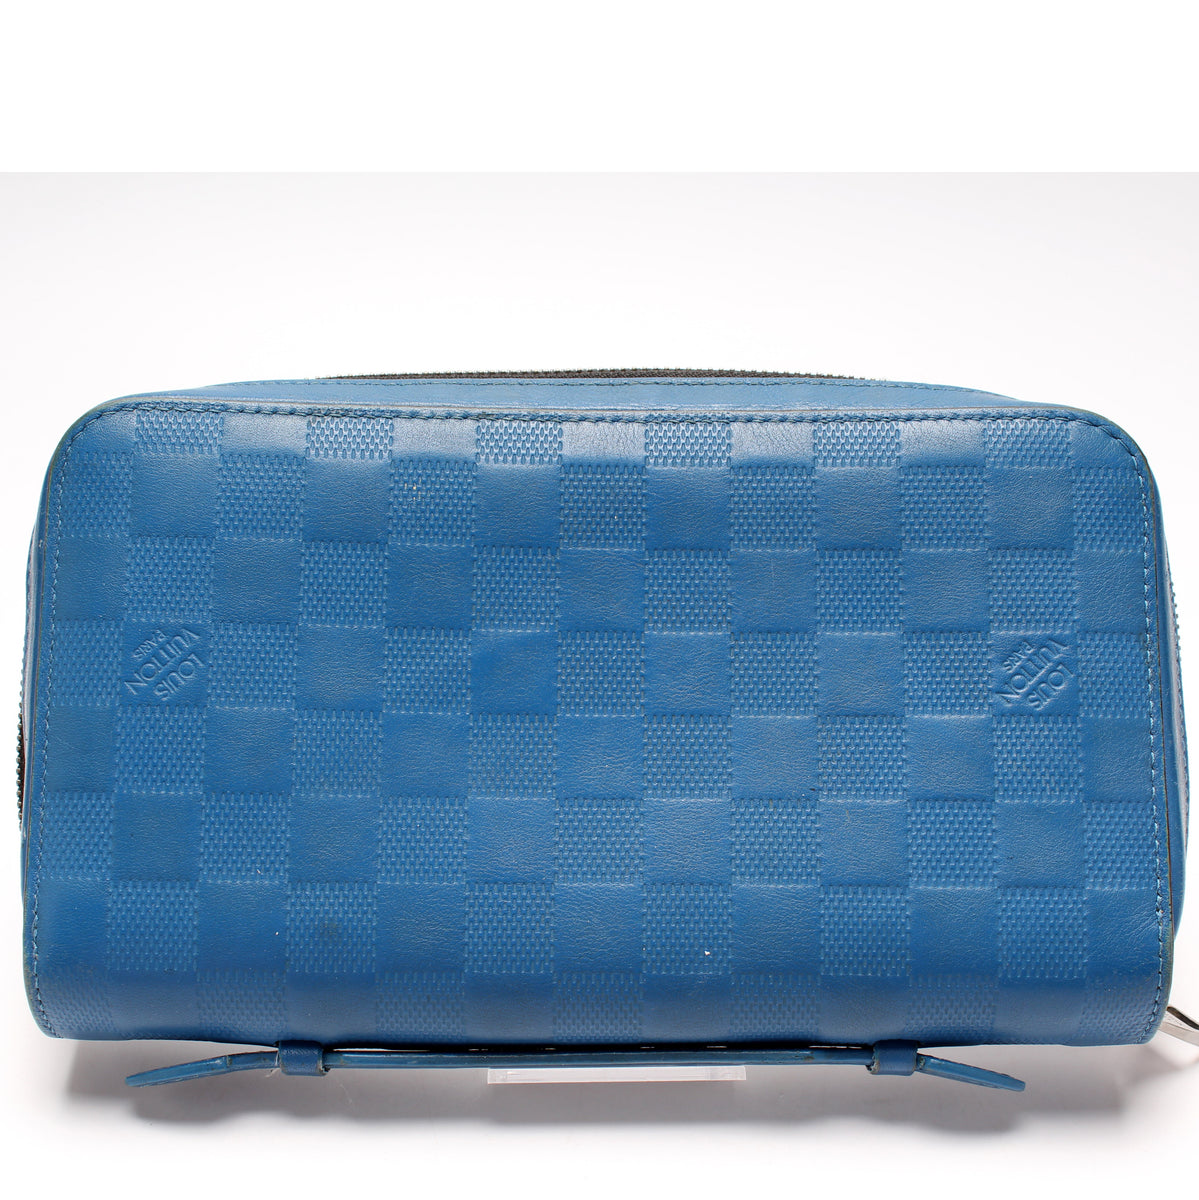 Louis Vuitton Blue Damier Infini Leather Zippy Wallet